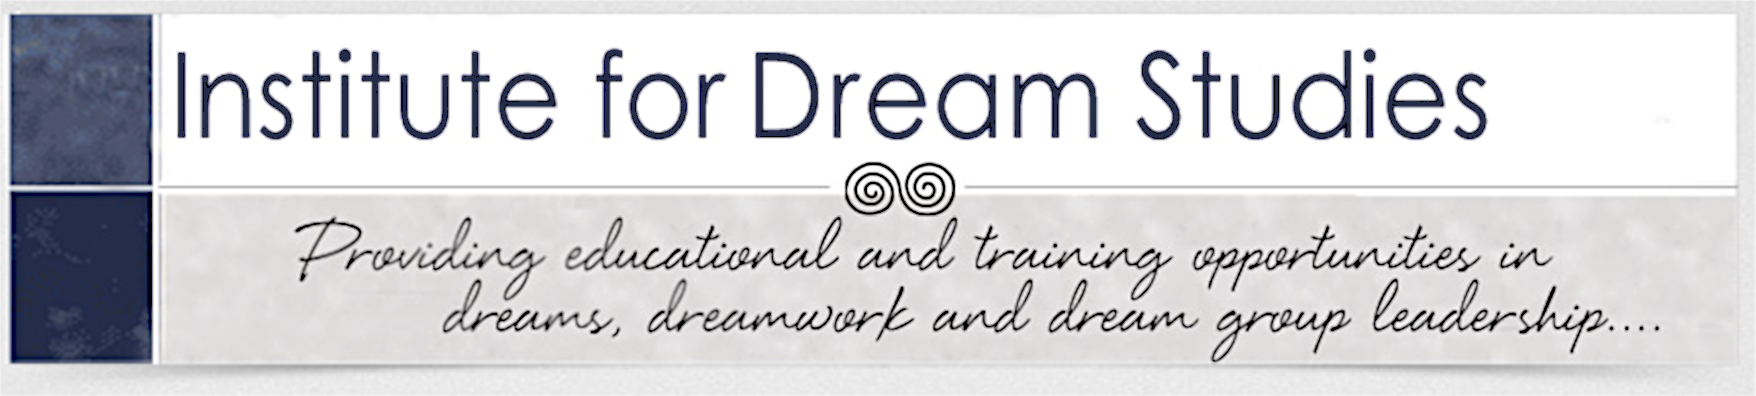 Institute for Dream Studies Logo